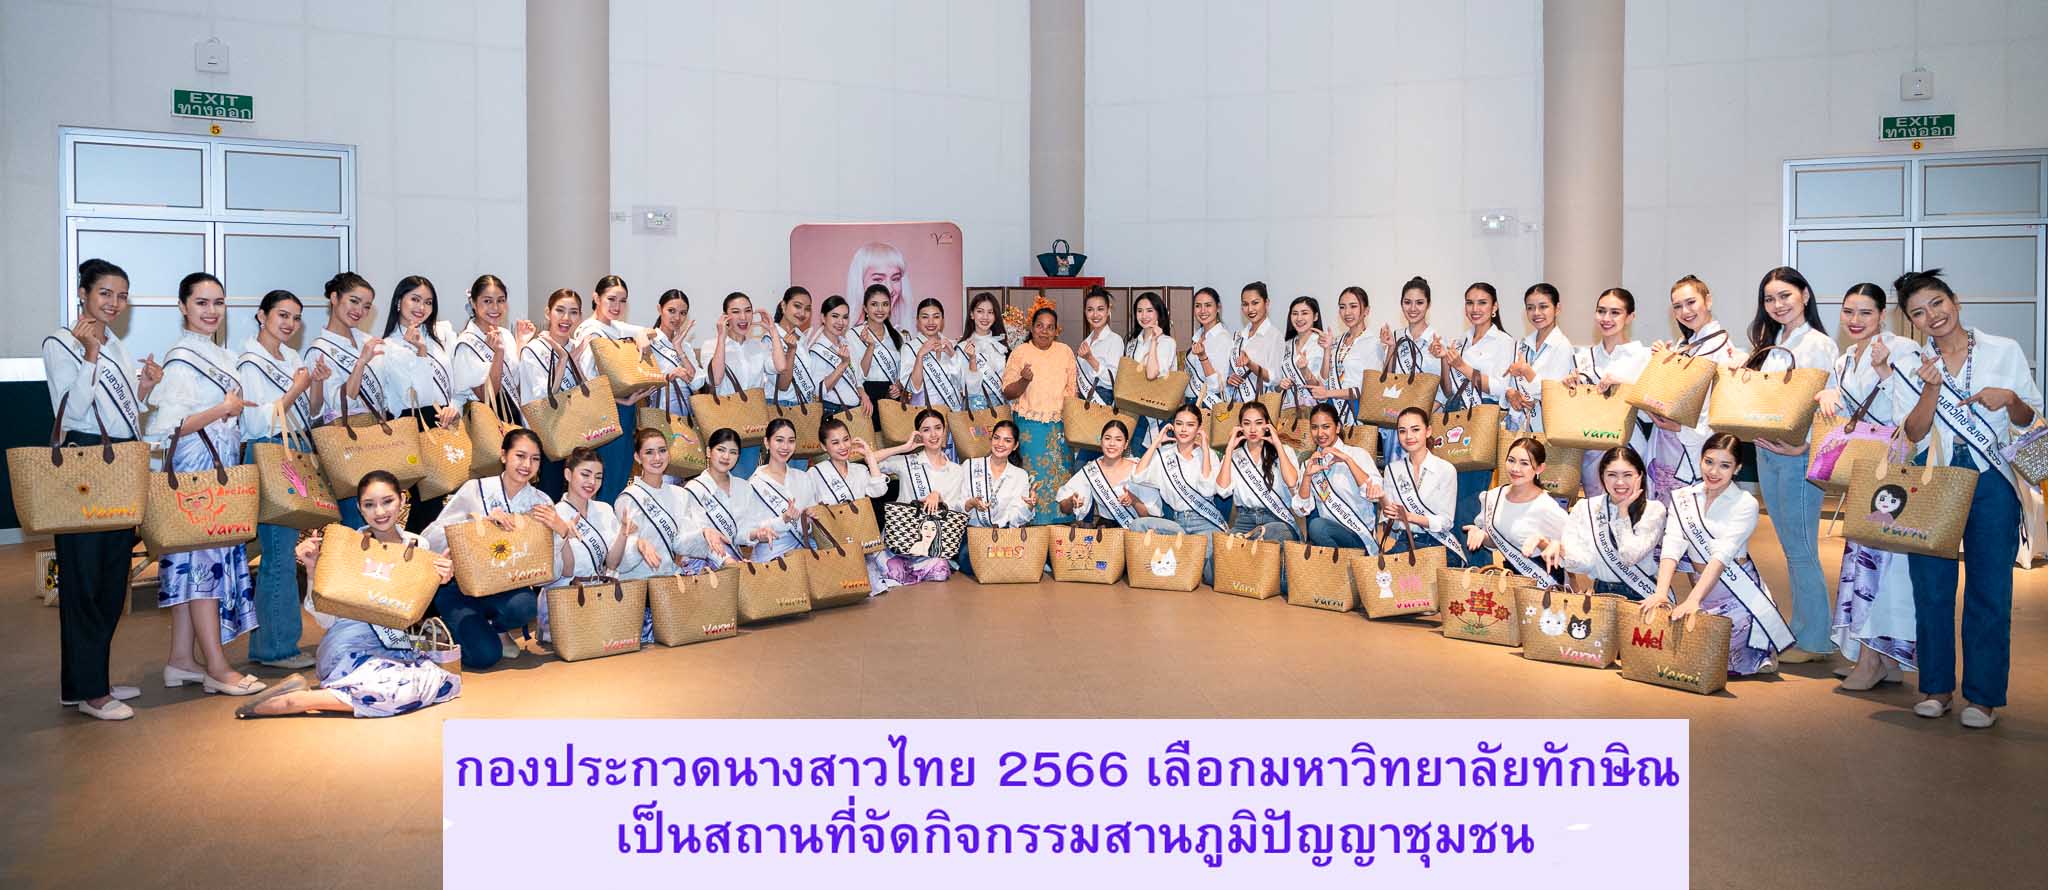 กองประกวดนางสาวไทย 2566 เลือกมหาวิทยาลัยทักษิณ เป็นสถานที่ทำกิจกรรมสานภูมิปัญญาชุมชน